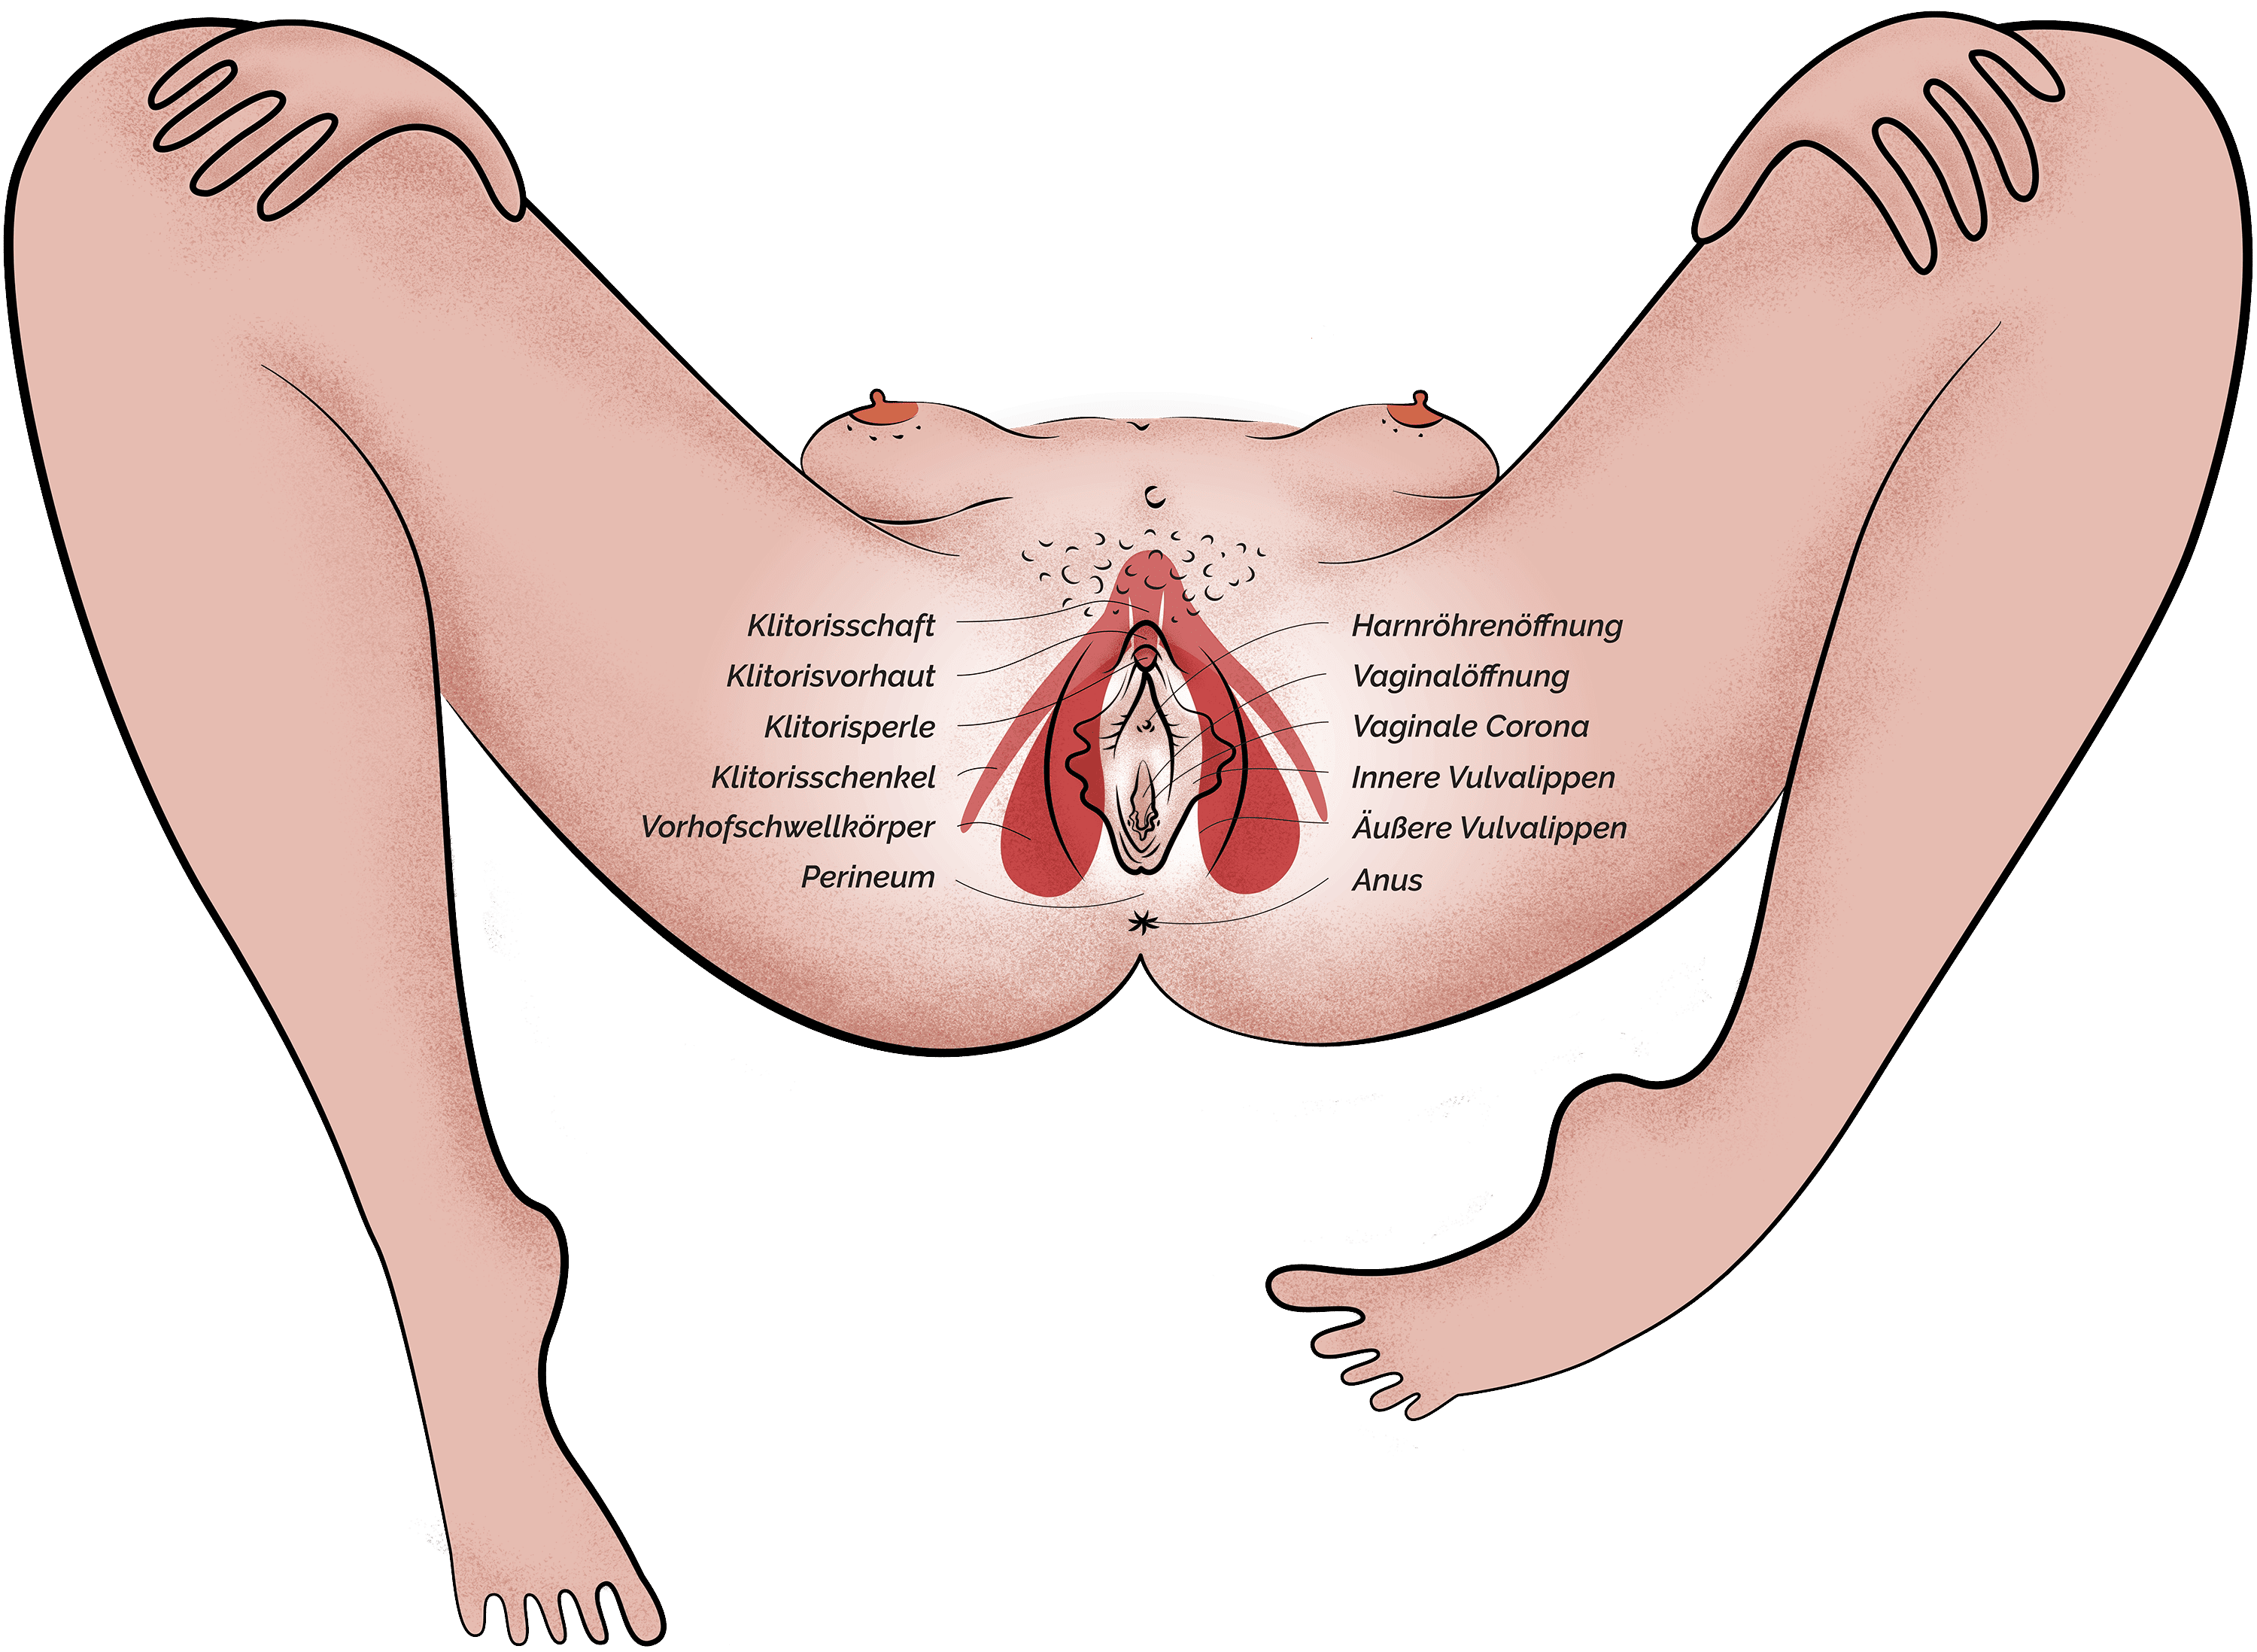 Anatomie Vulva mit Beschriftungen